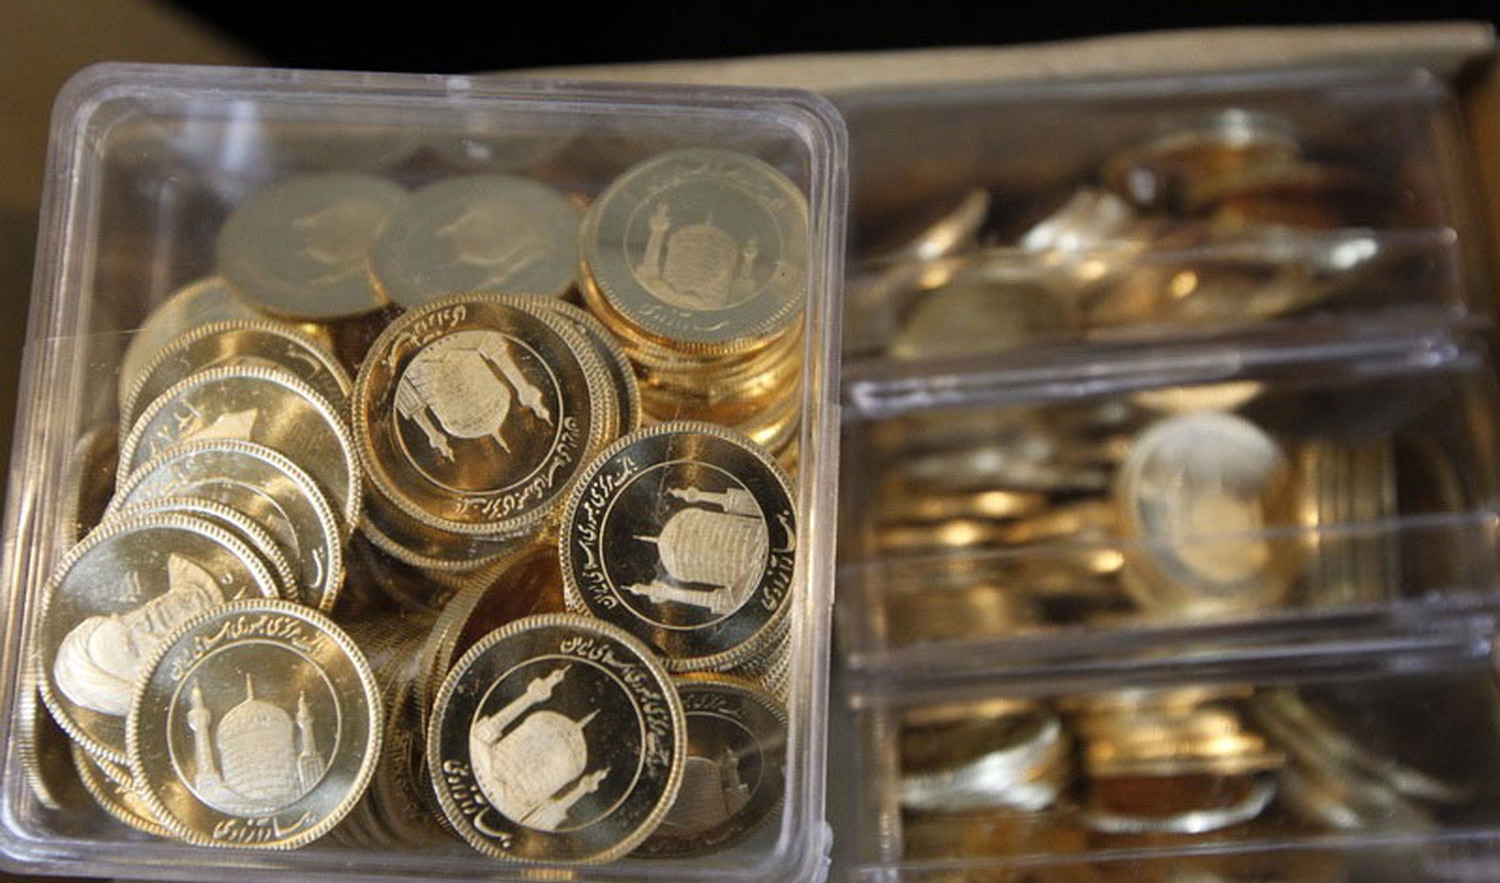 قیمت سکه در بازار امروز؛ شنبه ۱۶ شهریور ۱۴۰۲/ کاهش قیمت سکه در معاملات امروز